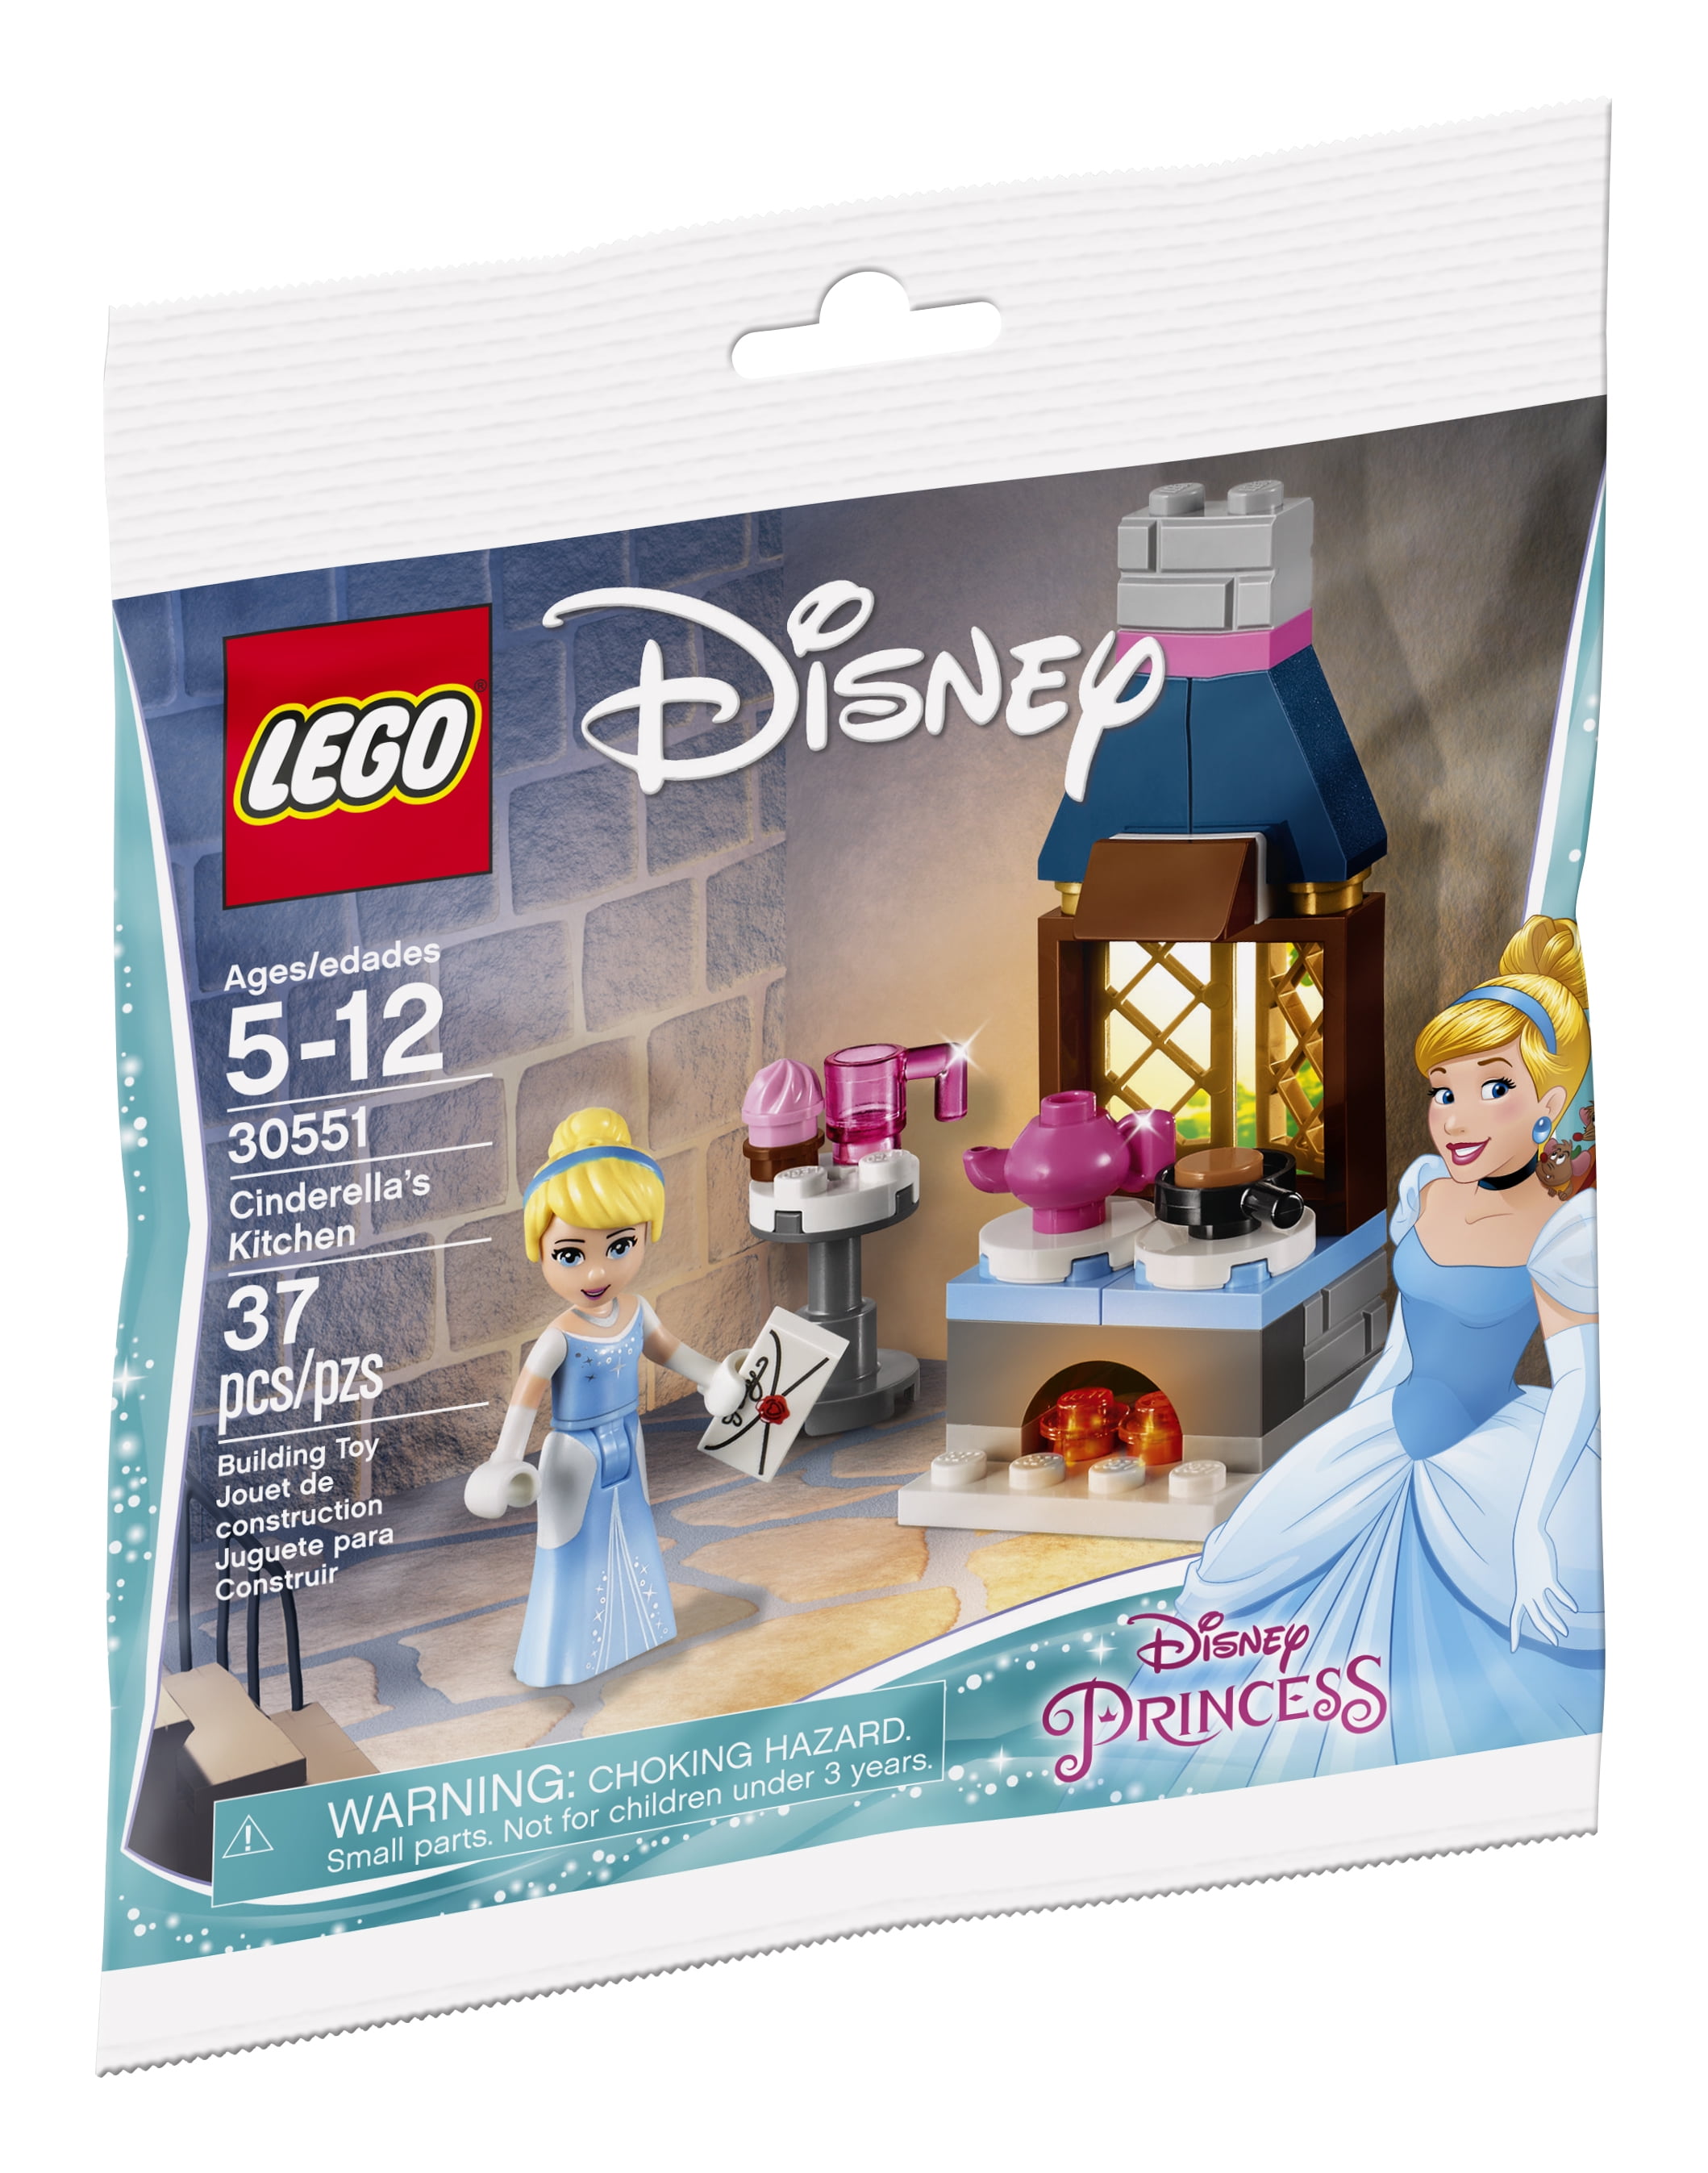 LEGO Disney Anna & Elsa's Frozen Playground 10736 for sale online